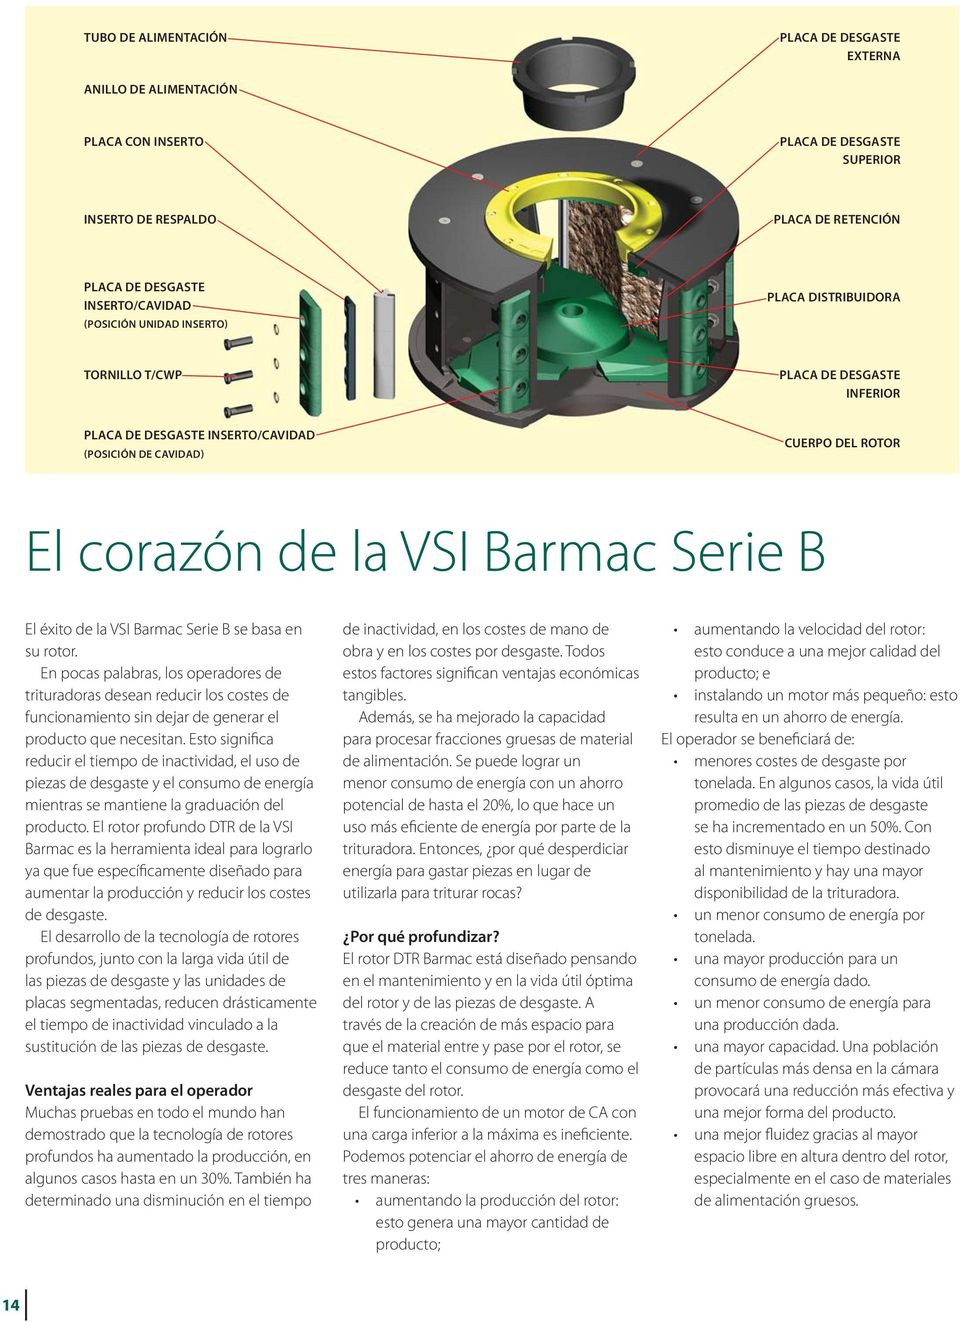 la VSI Barmac Serie B se basa en su rotor. En pocas palabras, los operadores de trituradoras desean reducir los costes de funcionamiento sin dejar de generar el producto que necesitan.